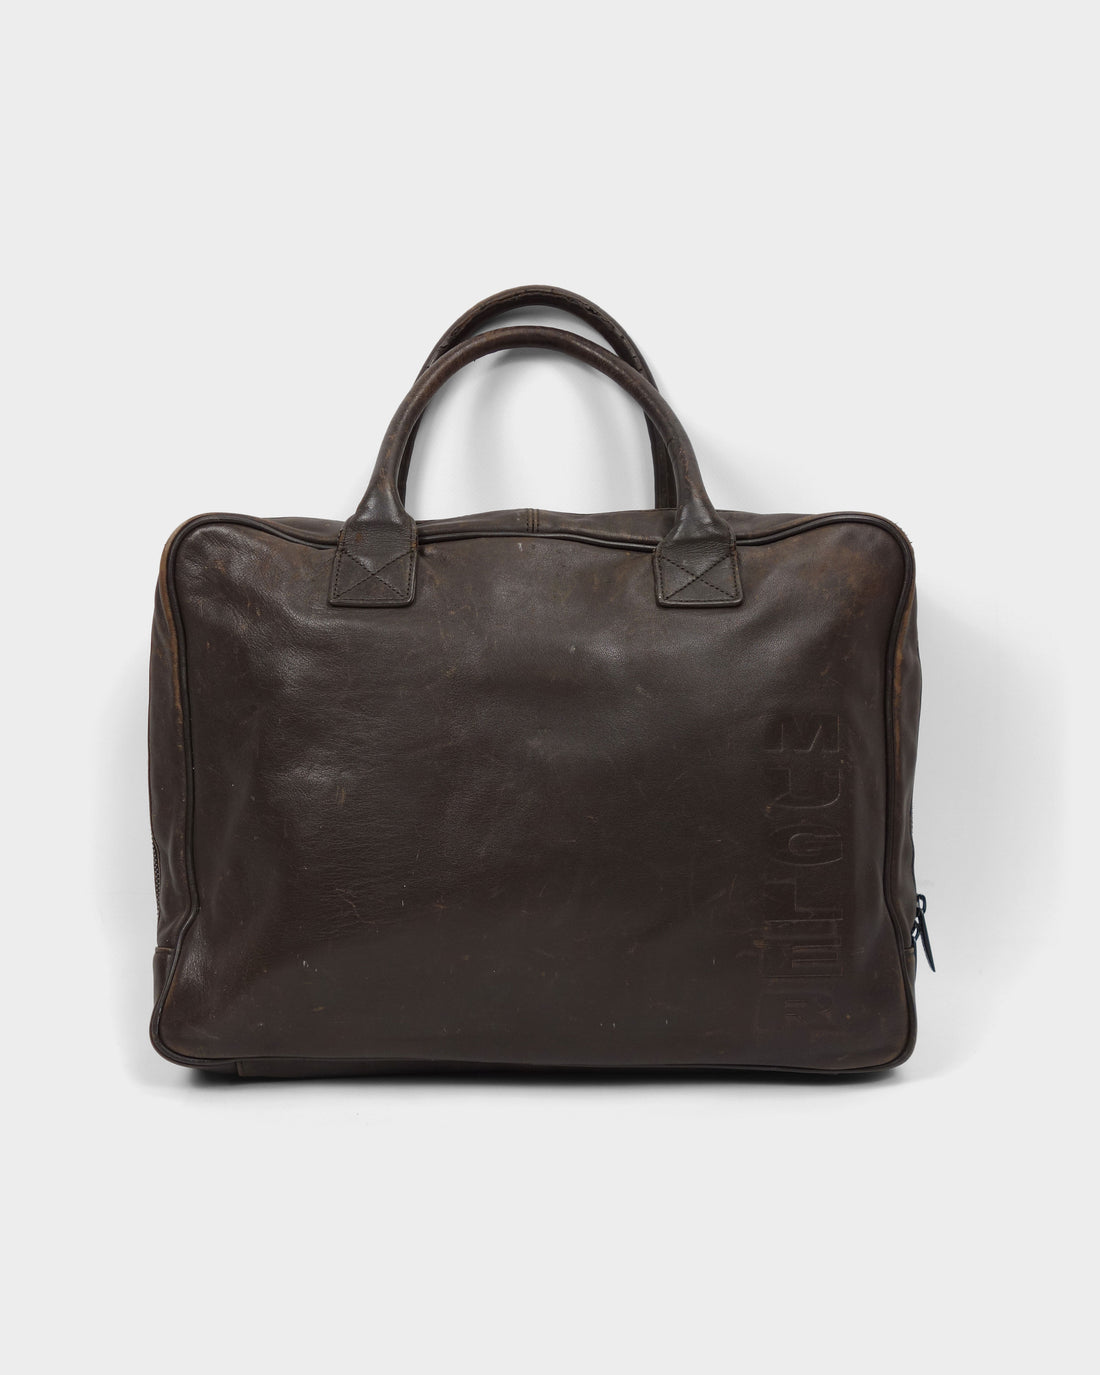 Mugler Brown Leather Hand Bag 2000's